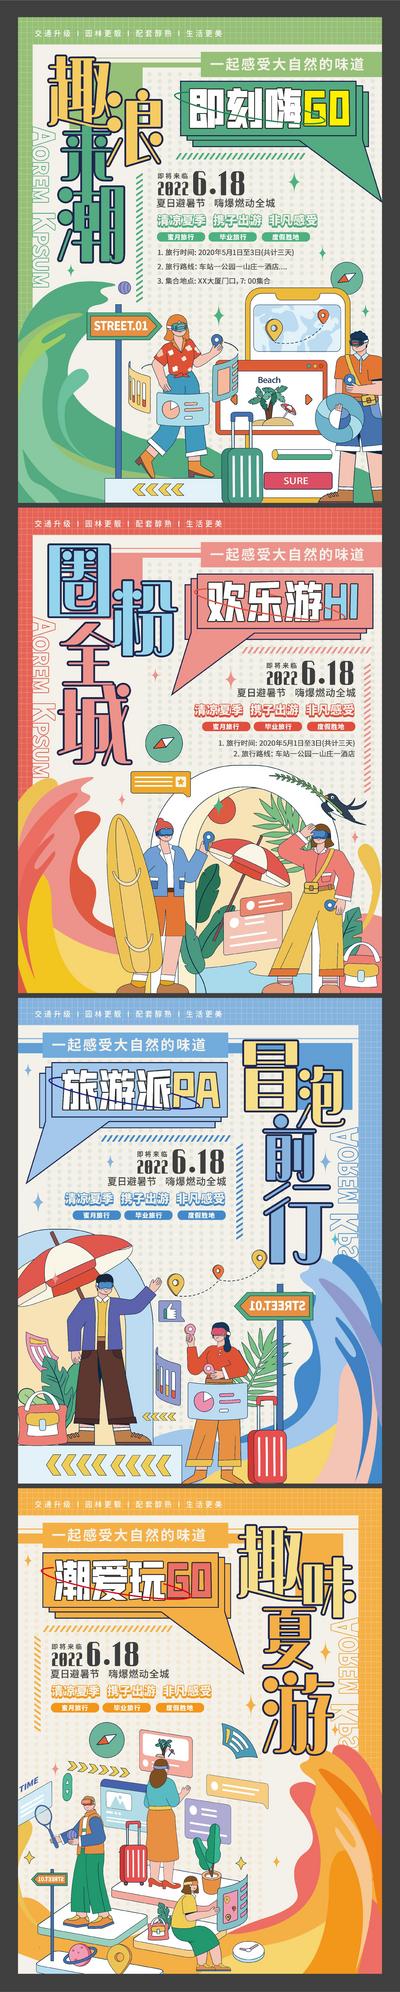 南门网 海报 夏季 夏日 商业 活动 系列 扁平化 插画